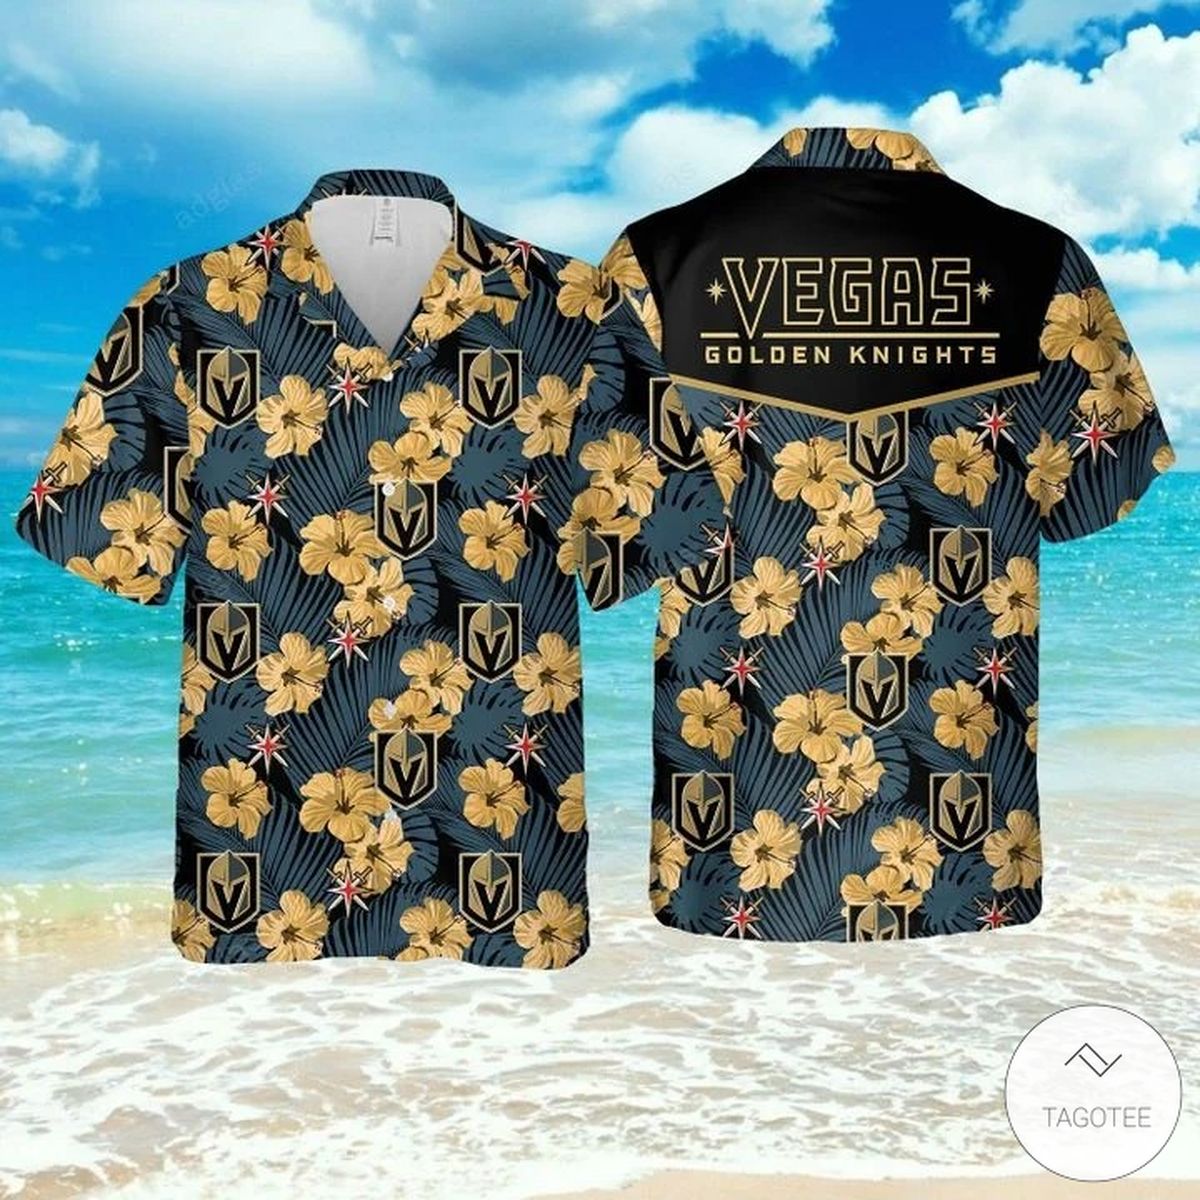 Vegas Golden Knights Hawaiian Shirt Set for Men Women Kids